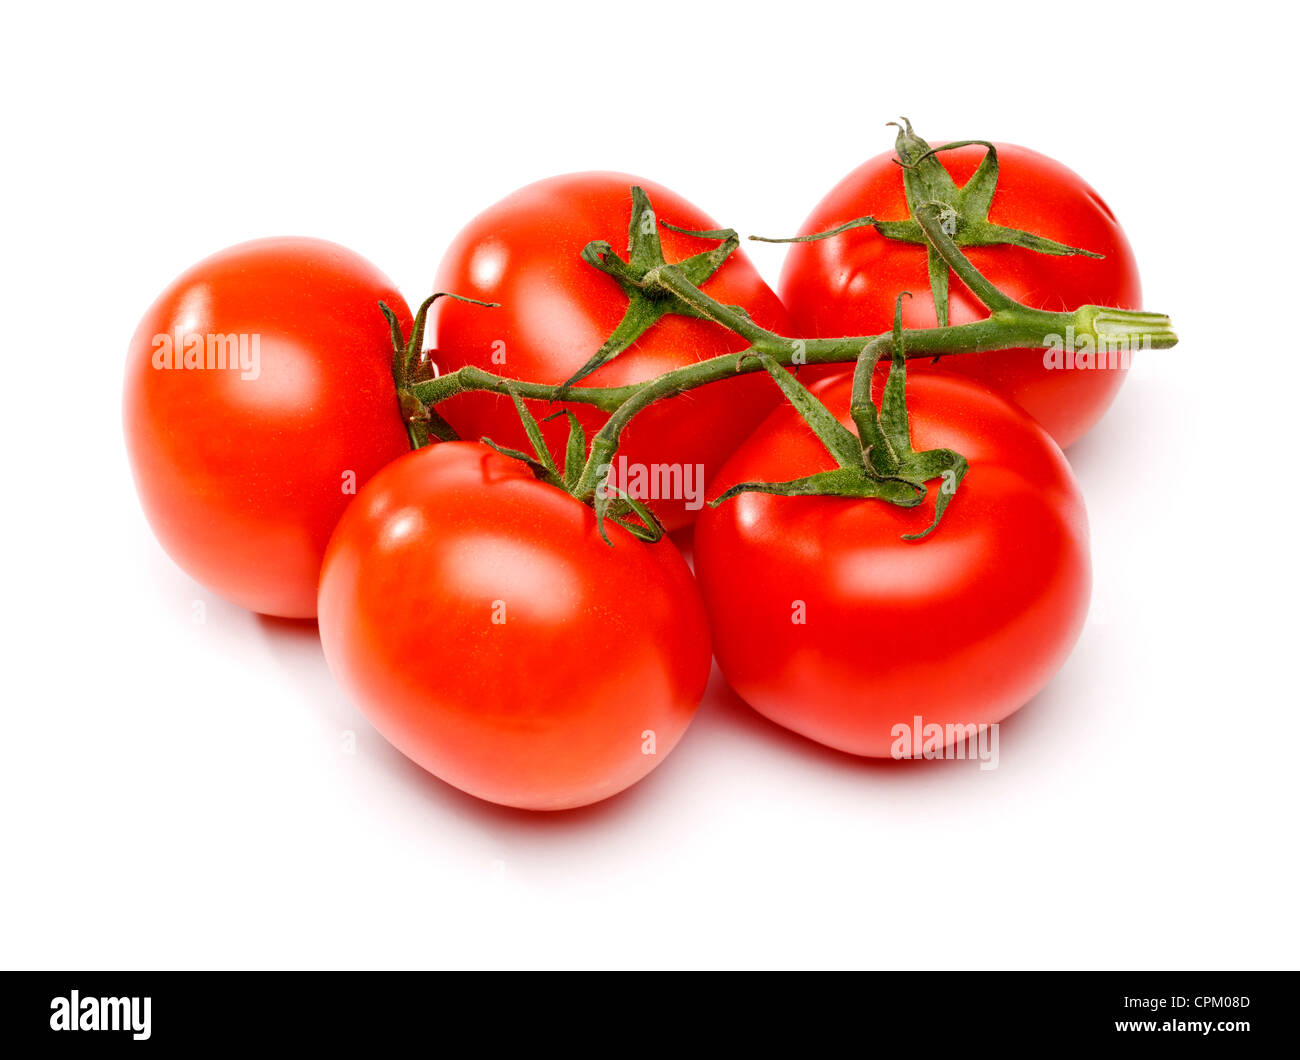 Les tomates sur la vigne Banque D'Images